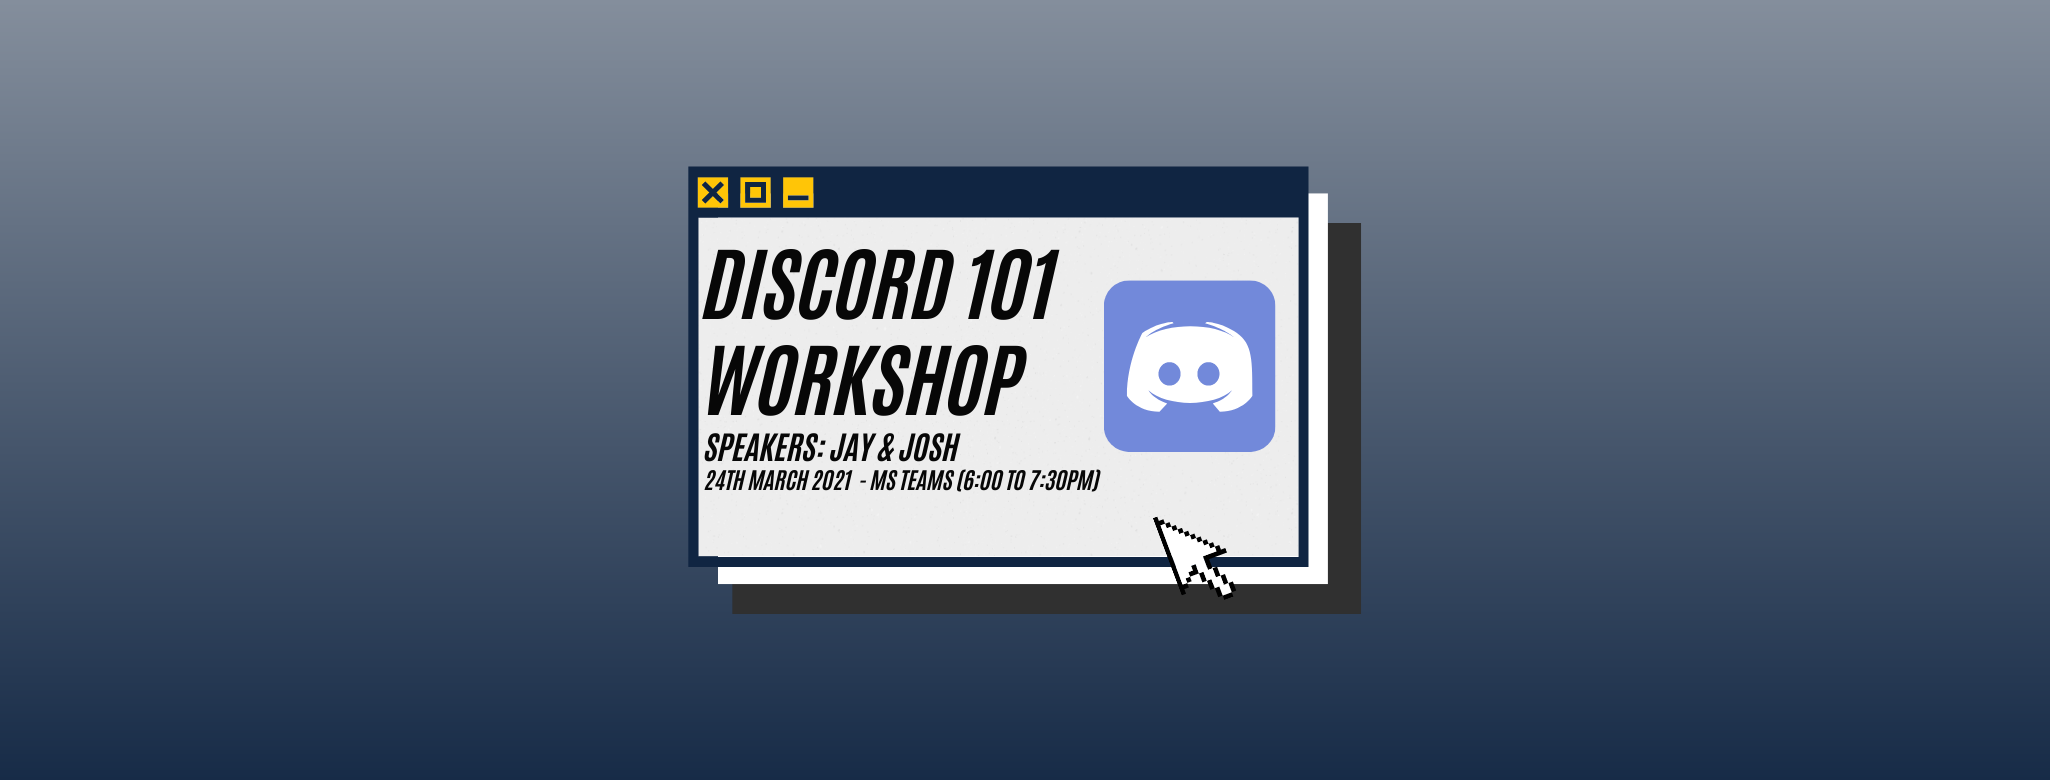 Discord Workshop Header